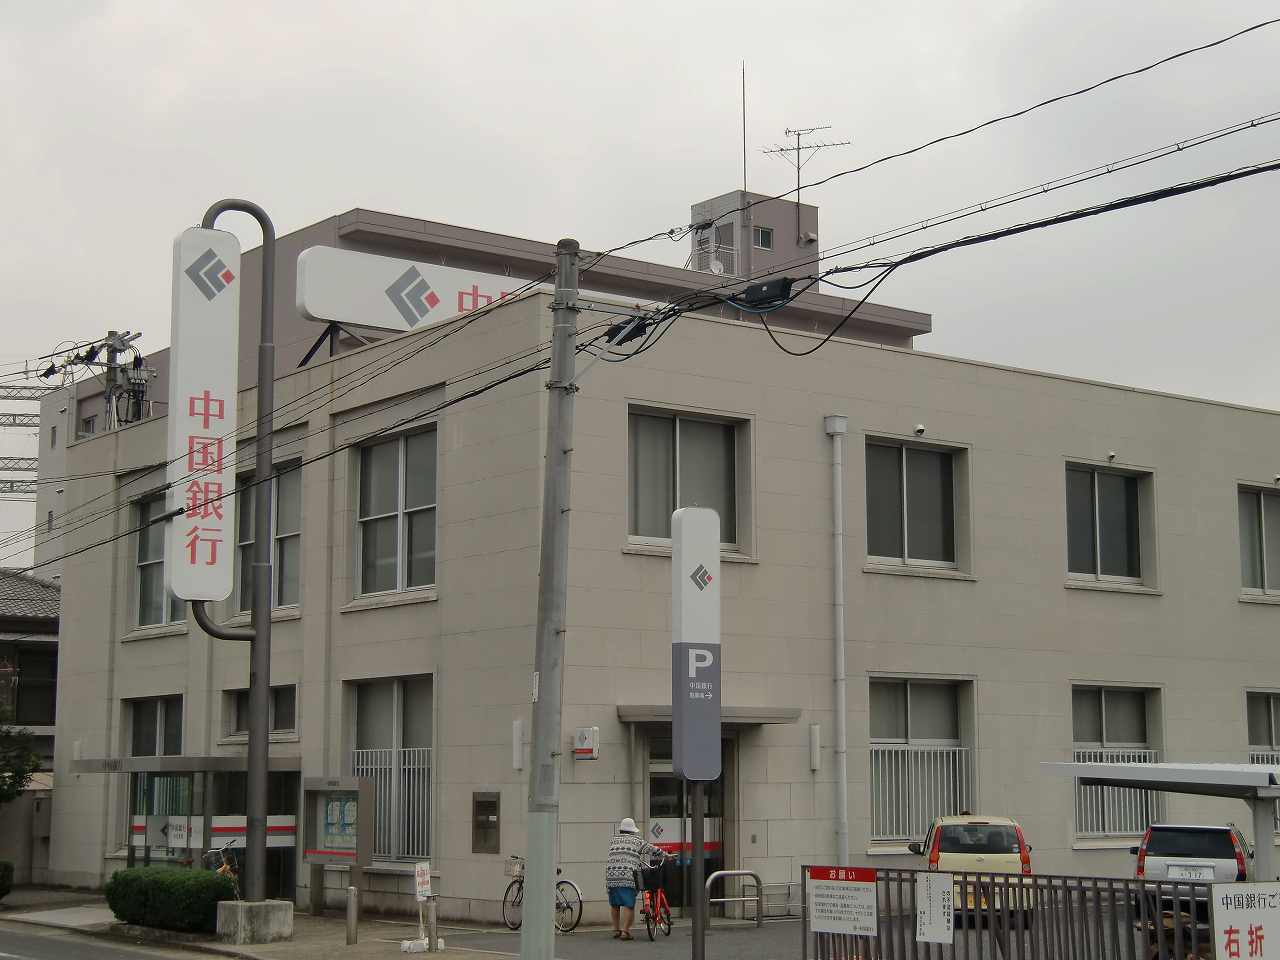 Bank. 829m to Bank of China Haraoshima Branch (Bank)